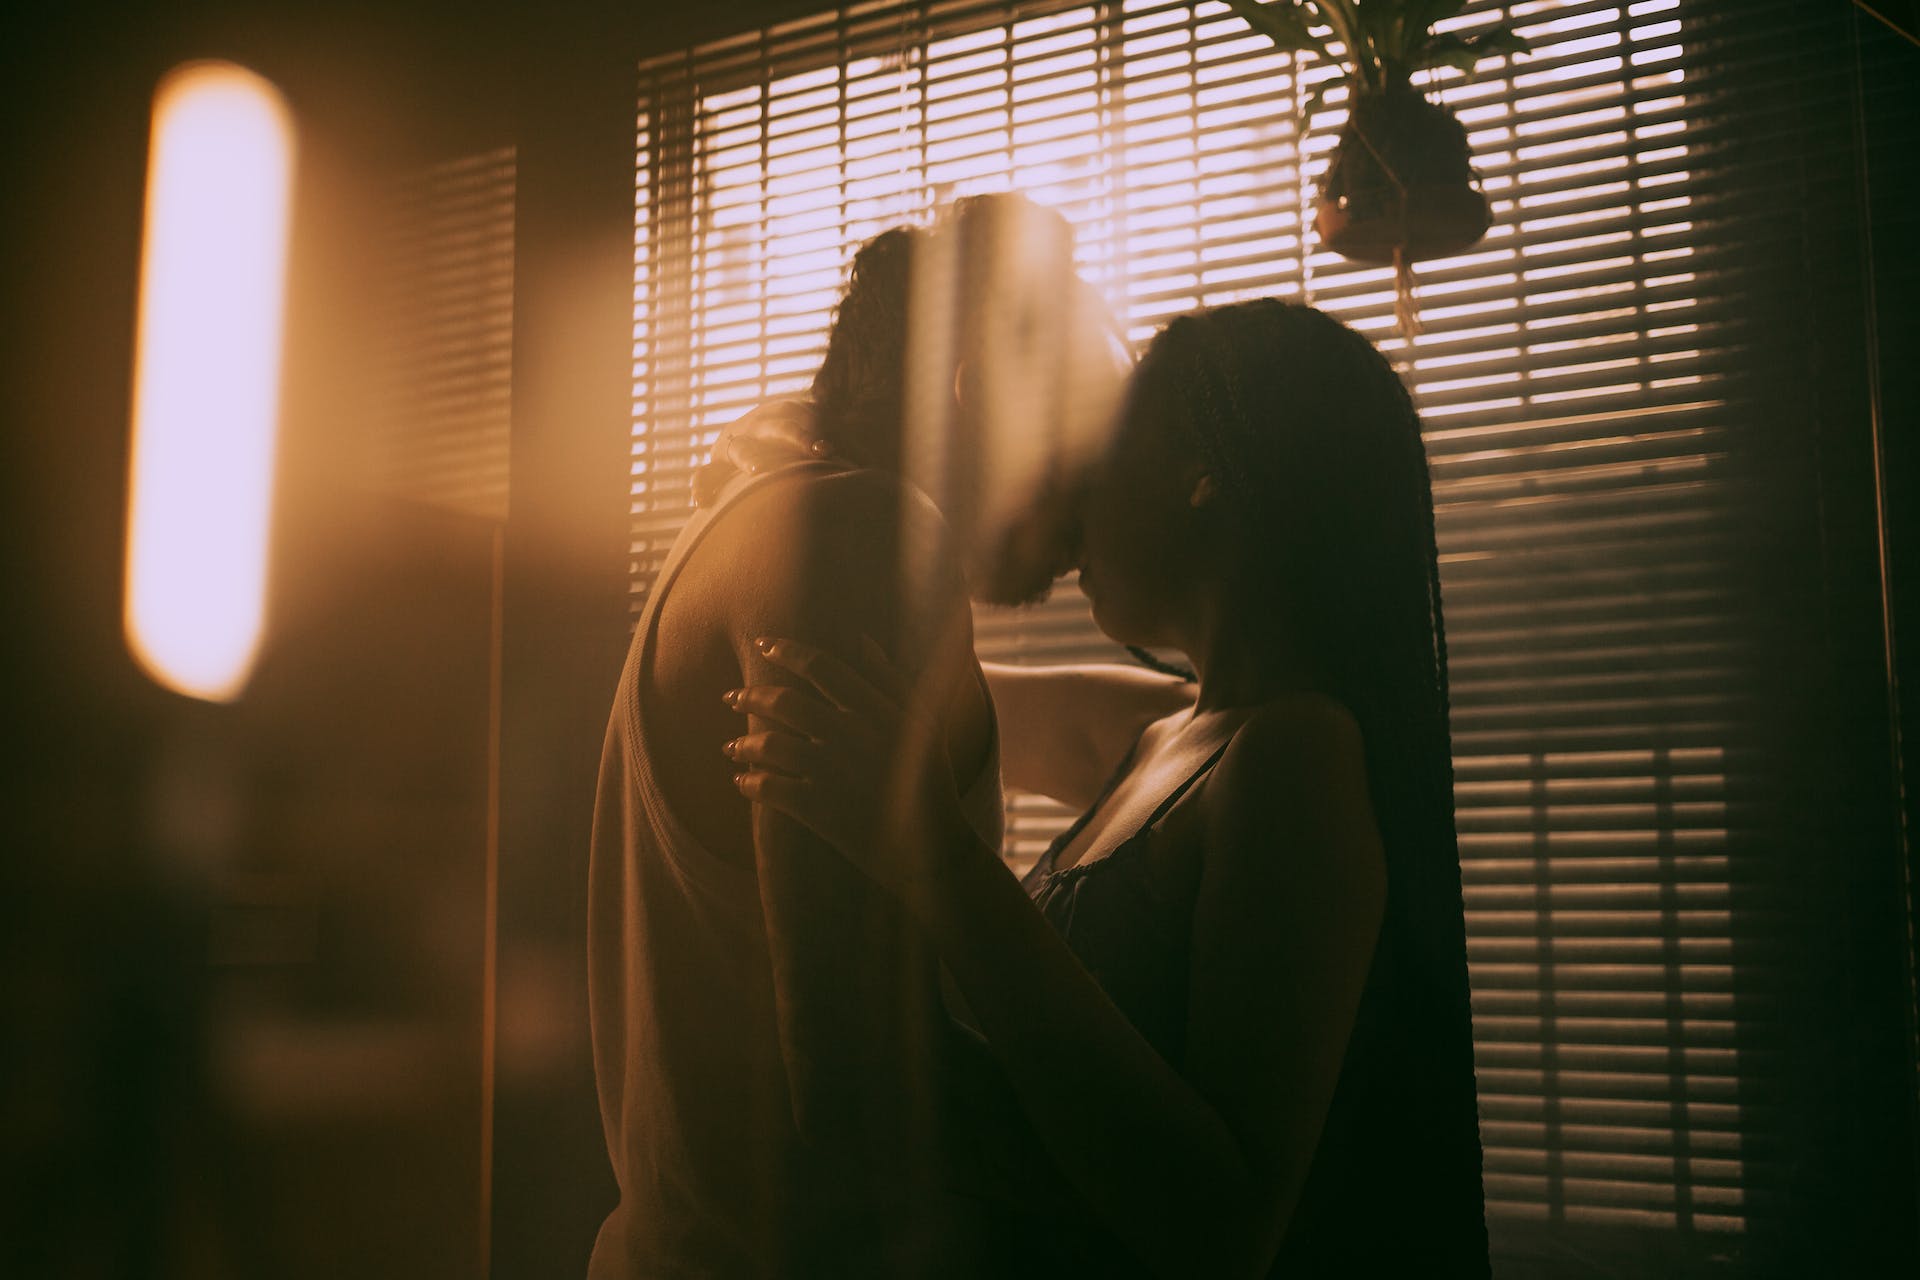 Couple s'embrassant | Source : Pexels